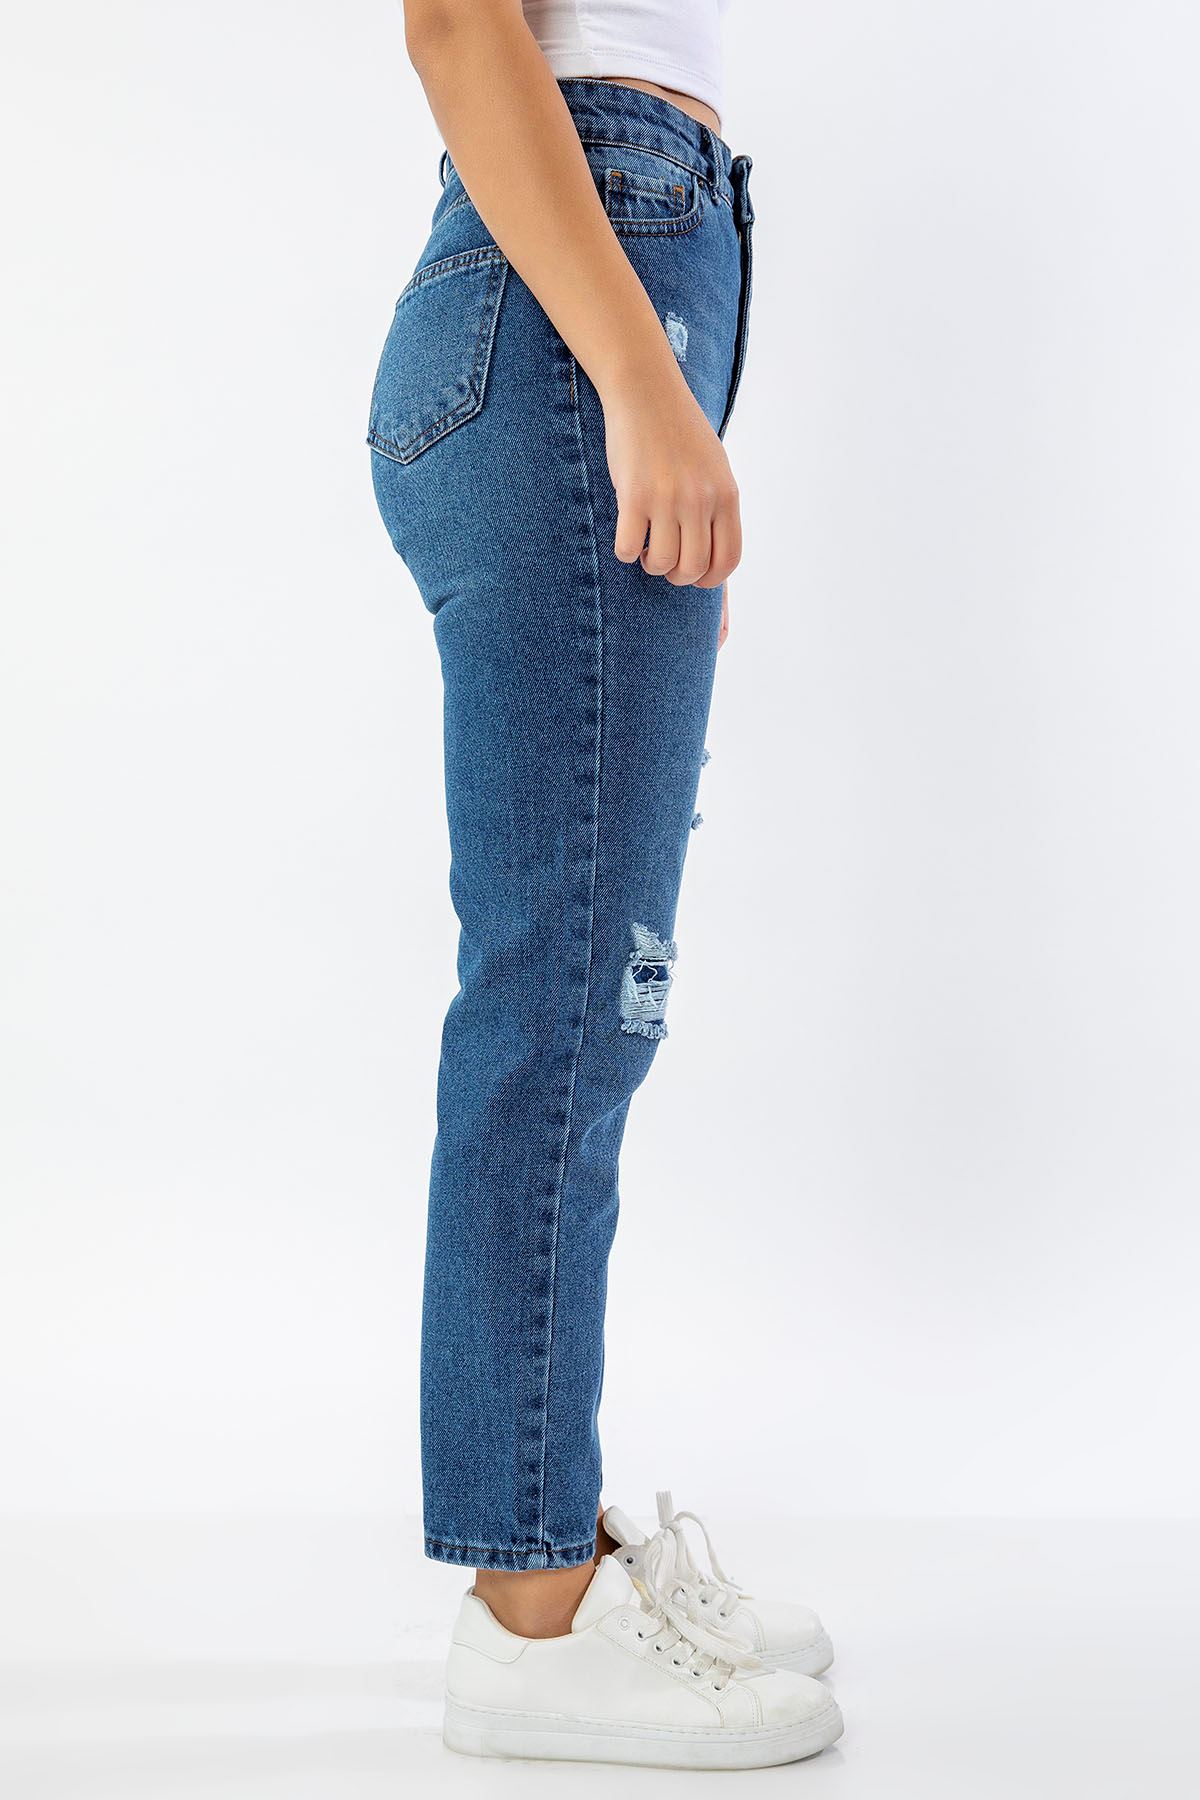 Denim Kumaş Bilek Boy Dizi Yırtık Jean Kadın Pantolon-Koyu Mavi